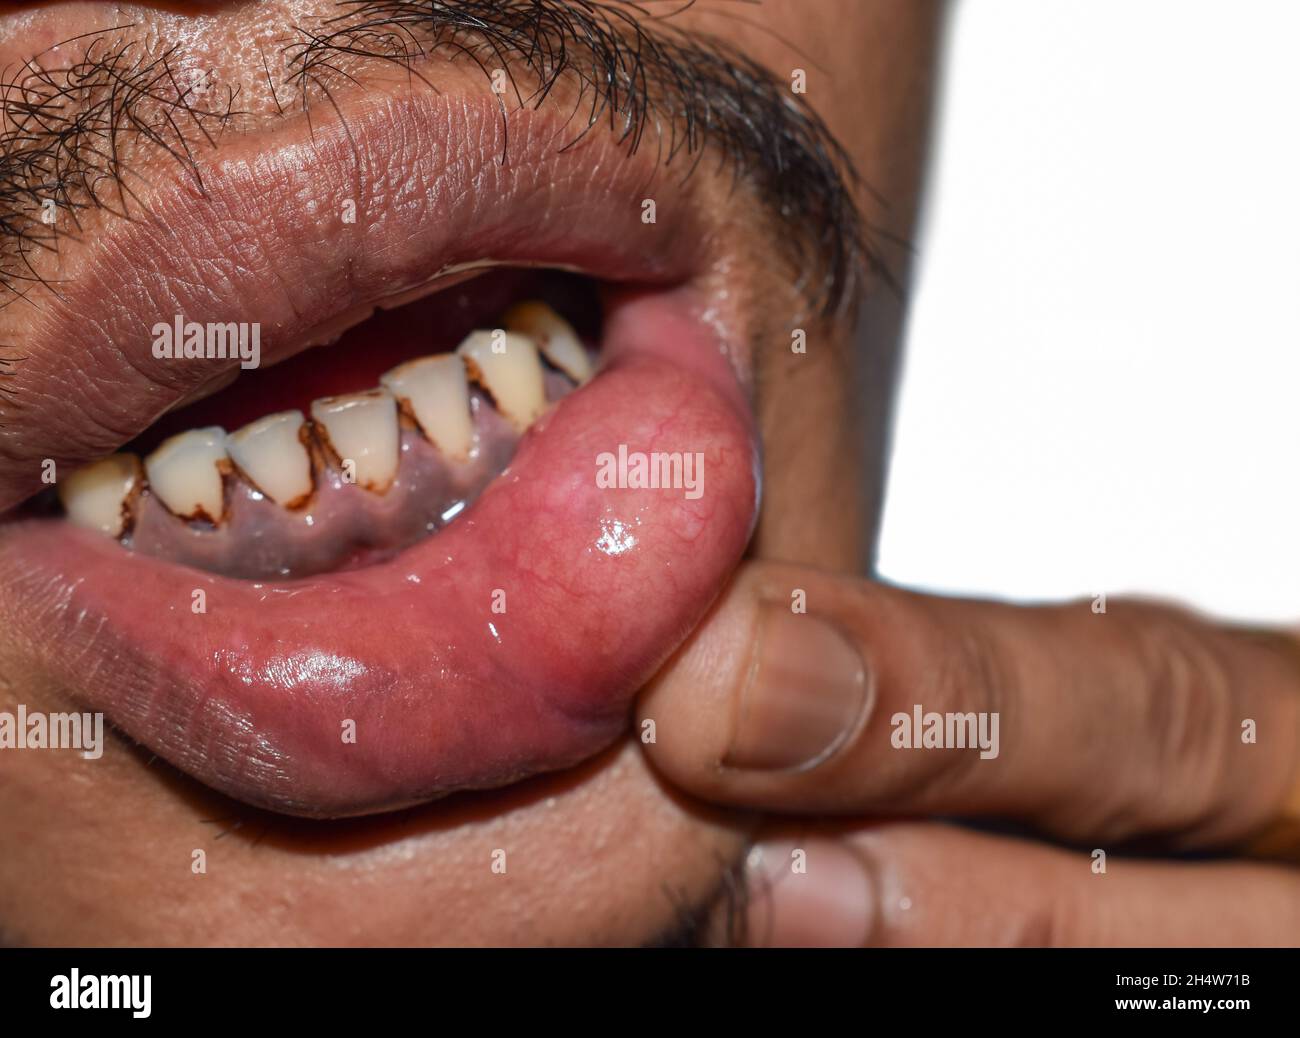 Abcès ou kyste avec pus à la lèvre inférieure de l'homme asiatique ...